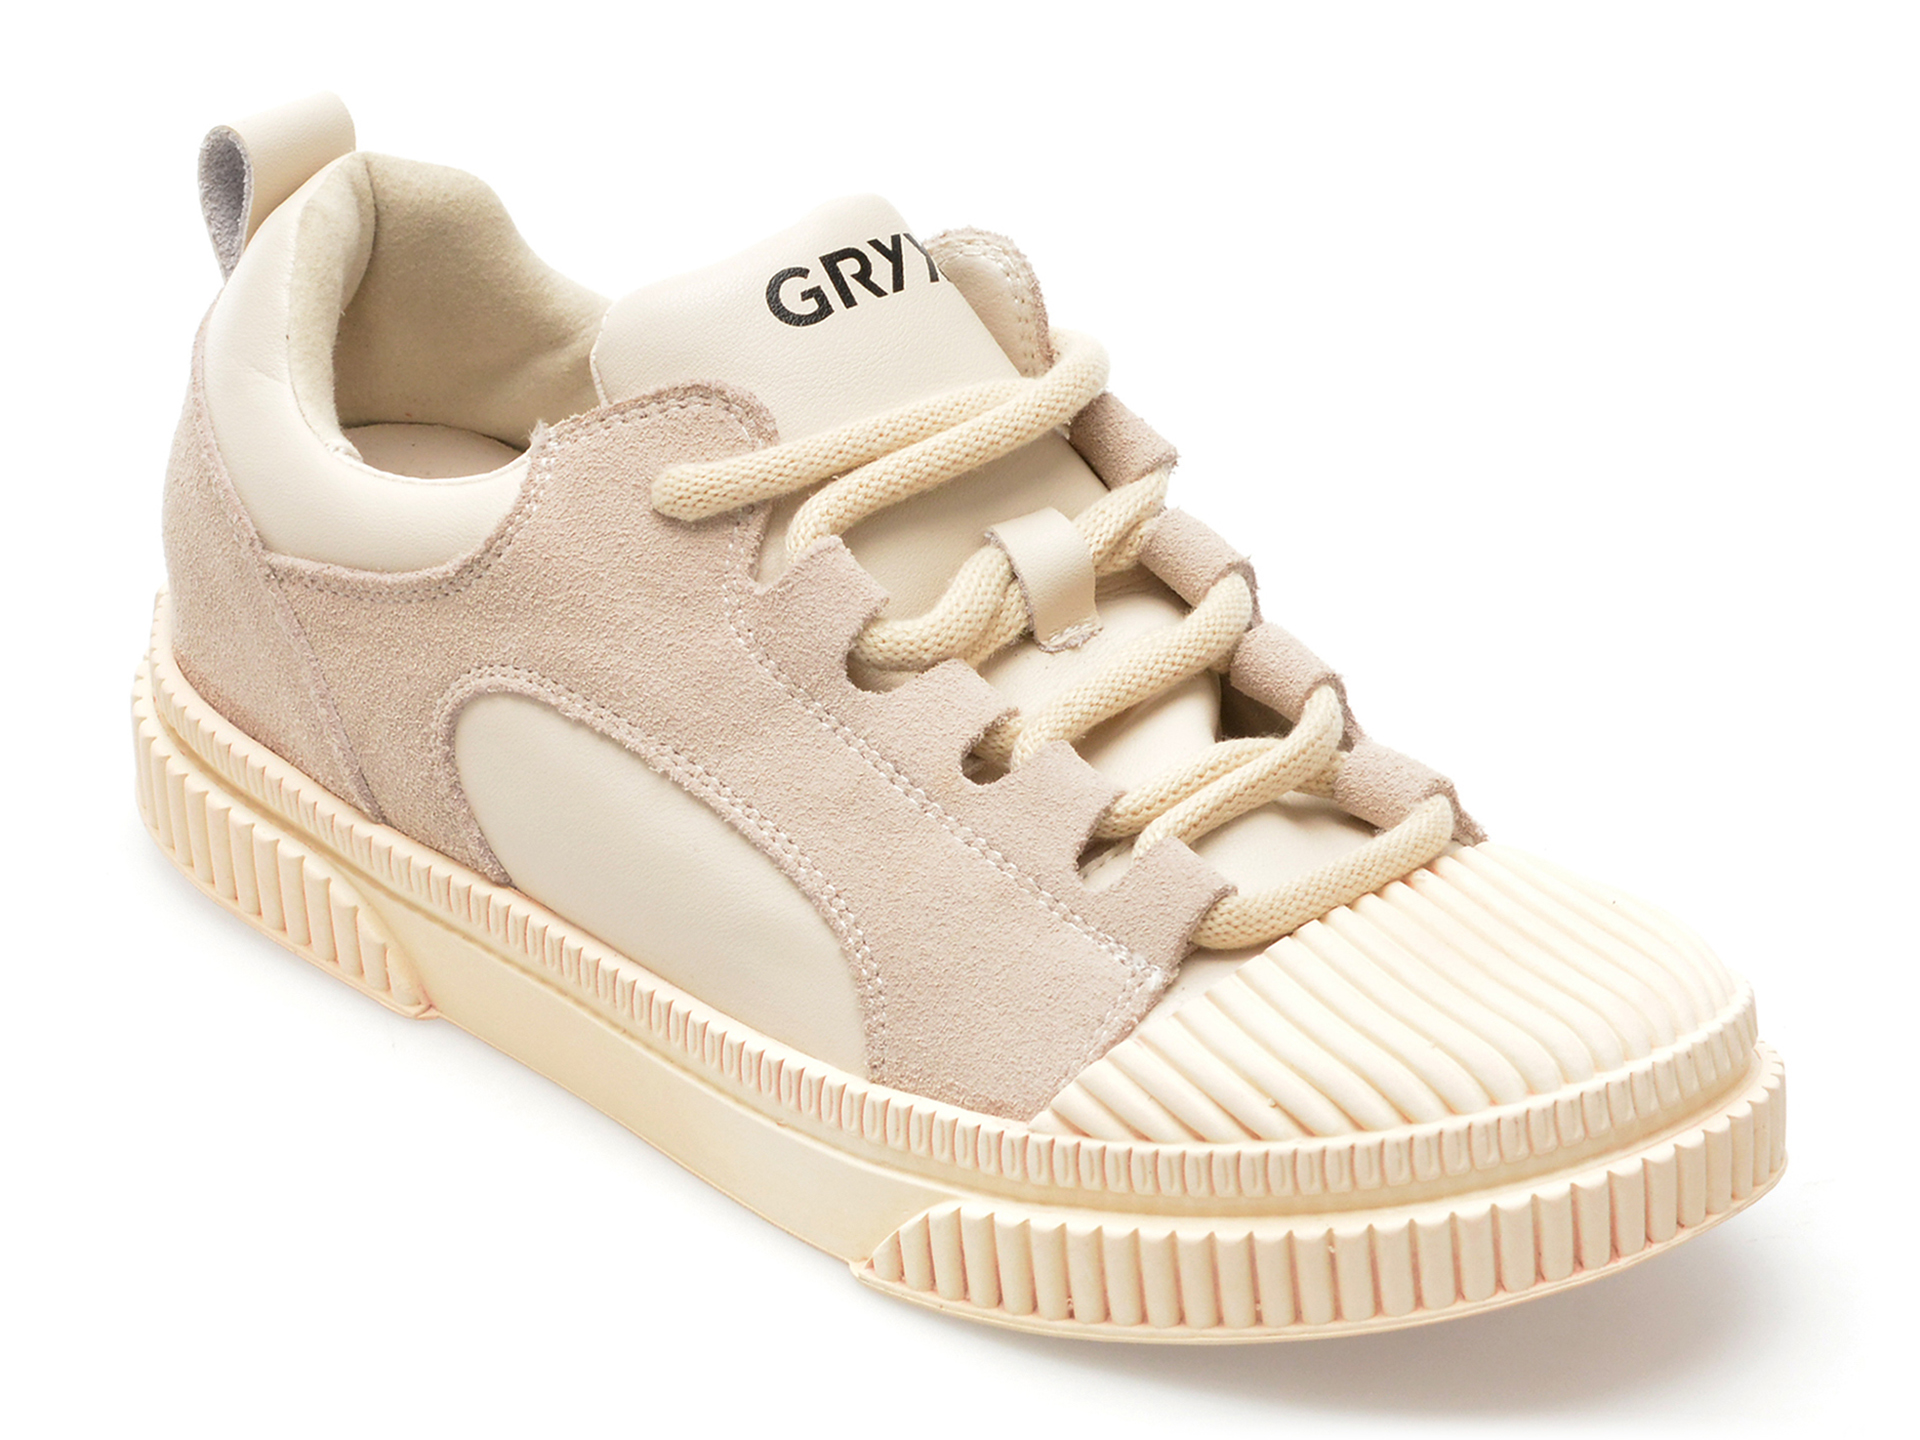 Pantofi GRYXX bej, 23090, din piele naturala imagine reduceri black friday 2021 Gryxx